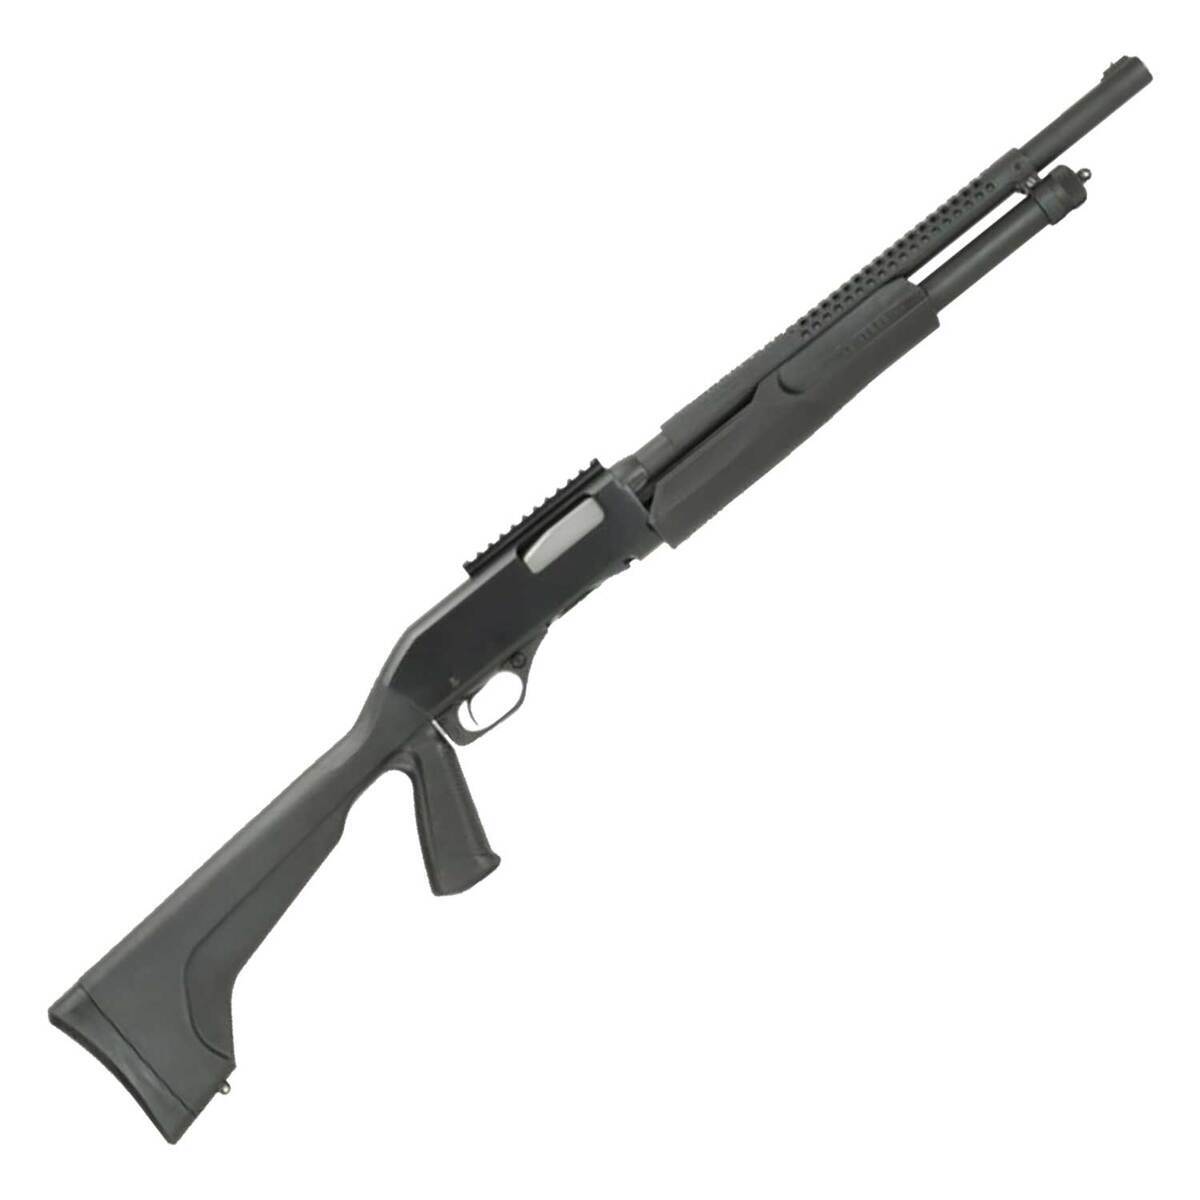 ESCOPETA SAVAGE ARMS STEVENS 320 SECURITY CAL. 12GA, 18.5 5RD - Premium  Guns